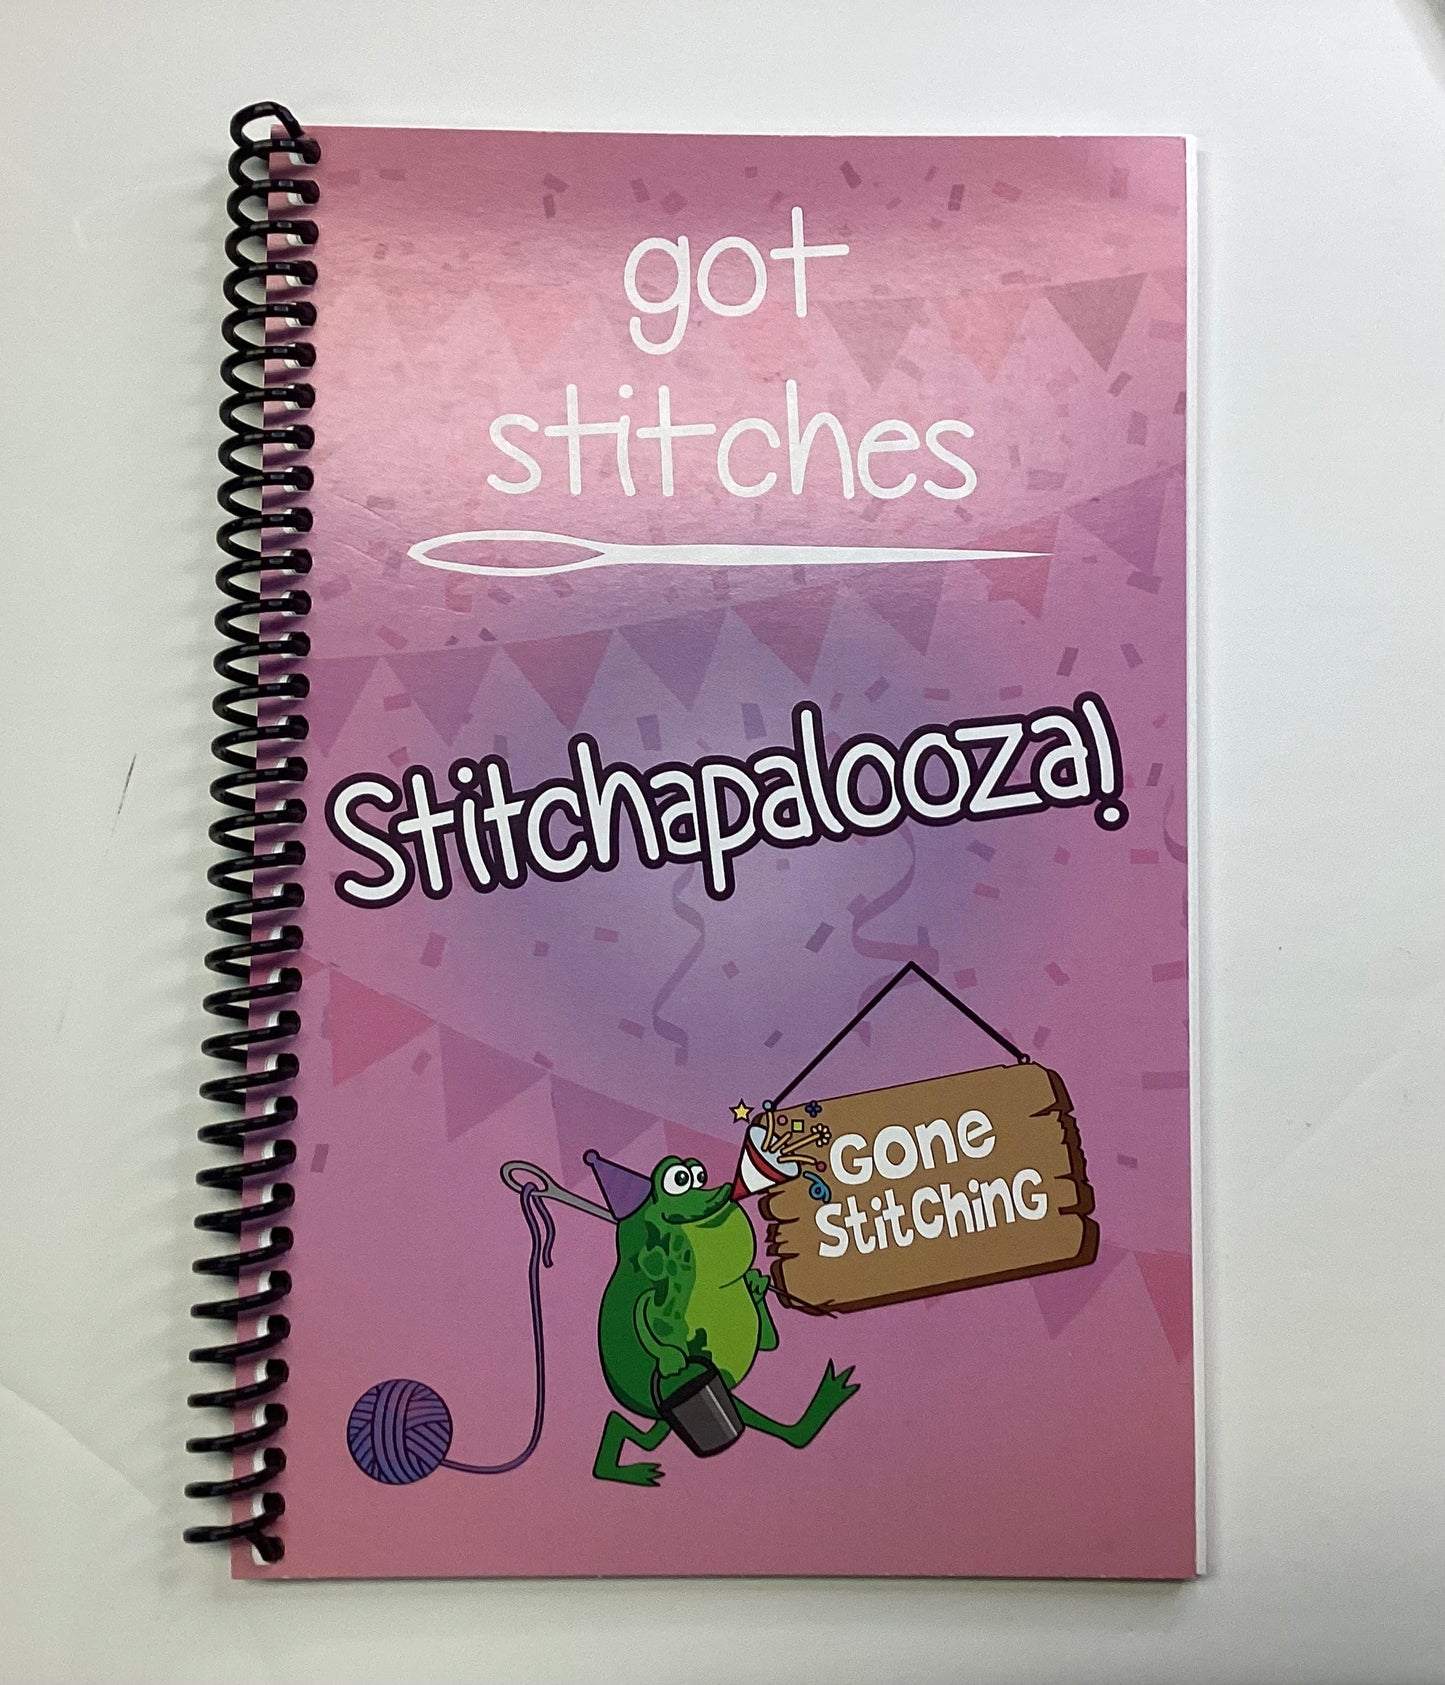 Got Stitches Stitchapalooza